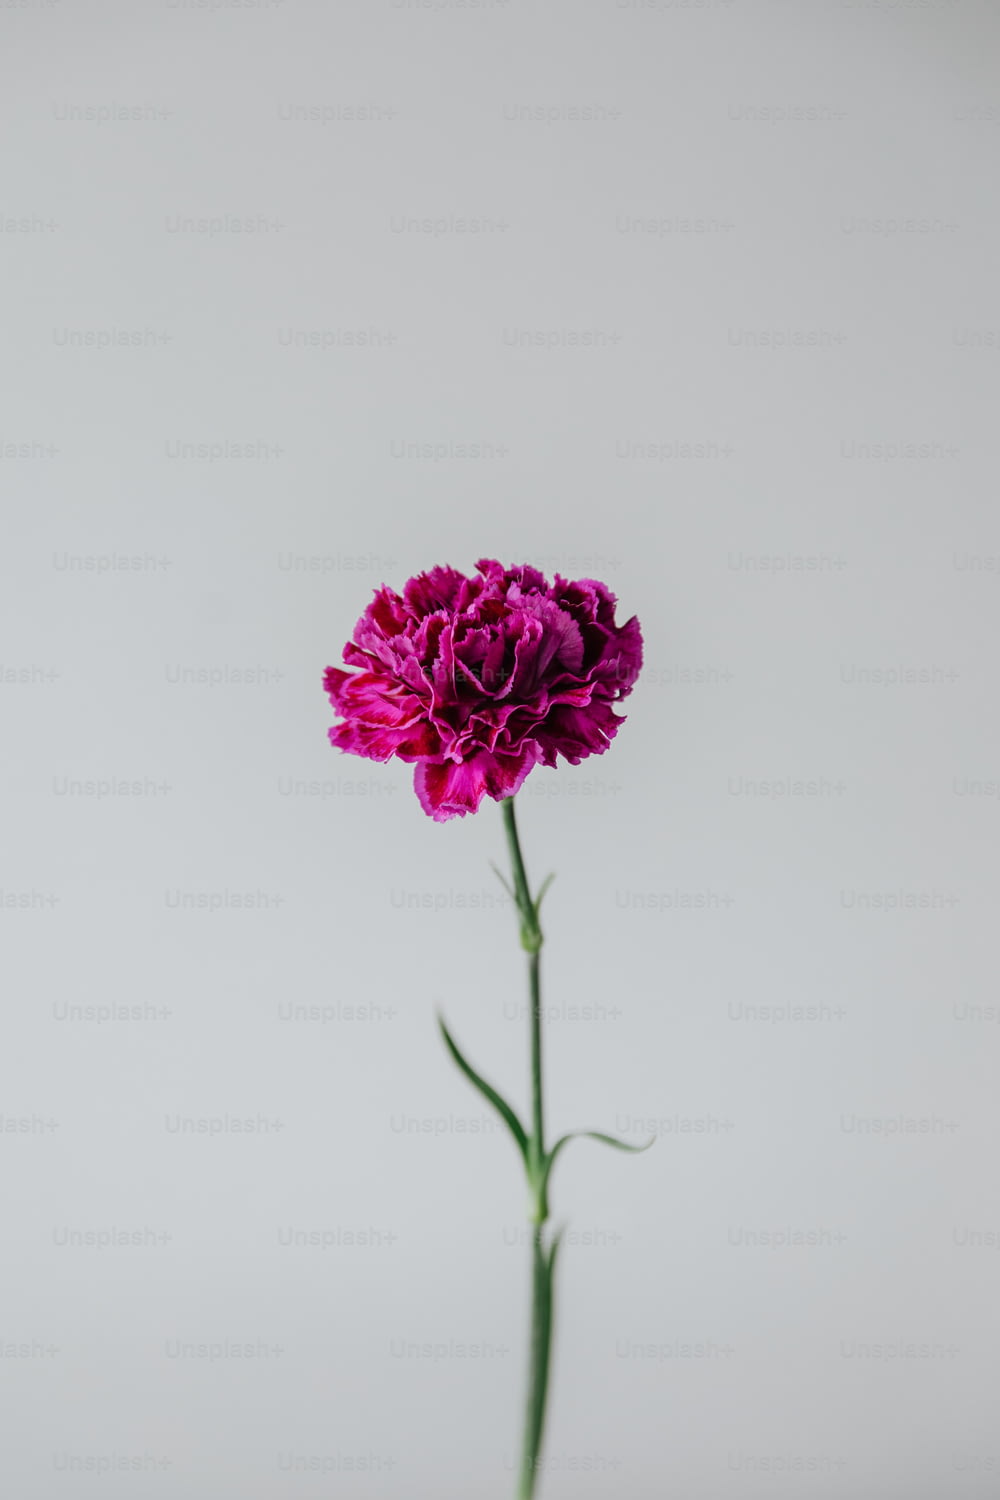 a single purple flower in a glass vase